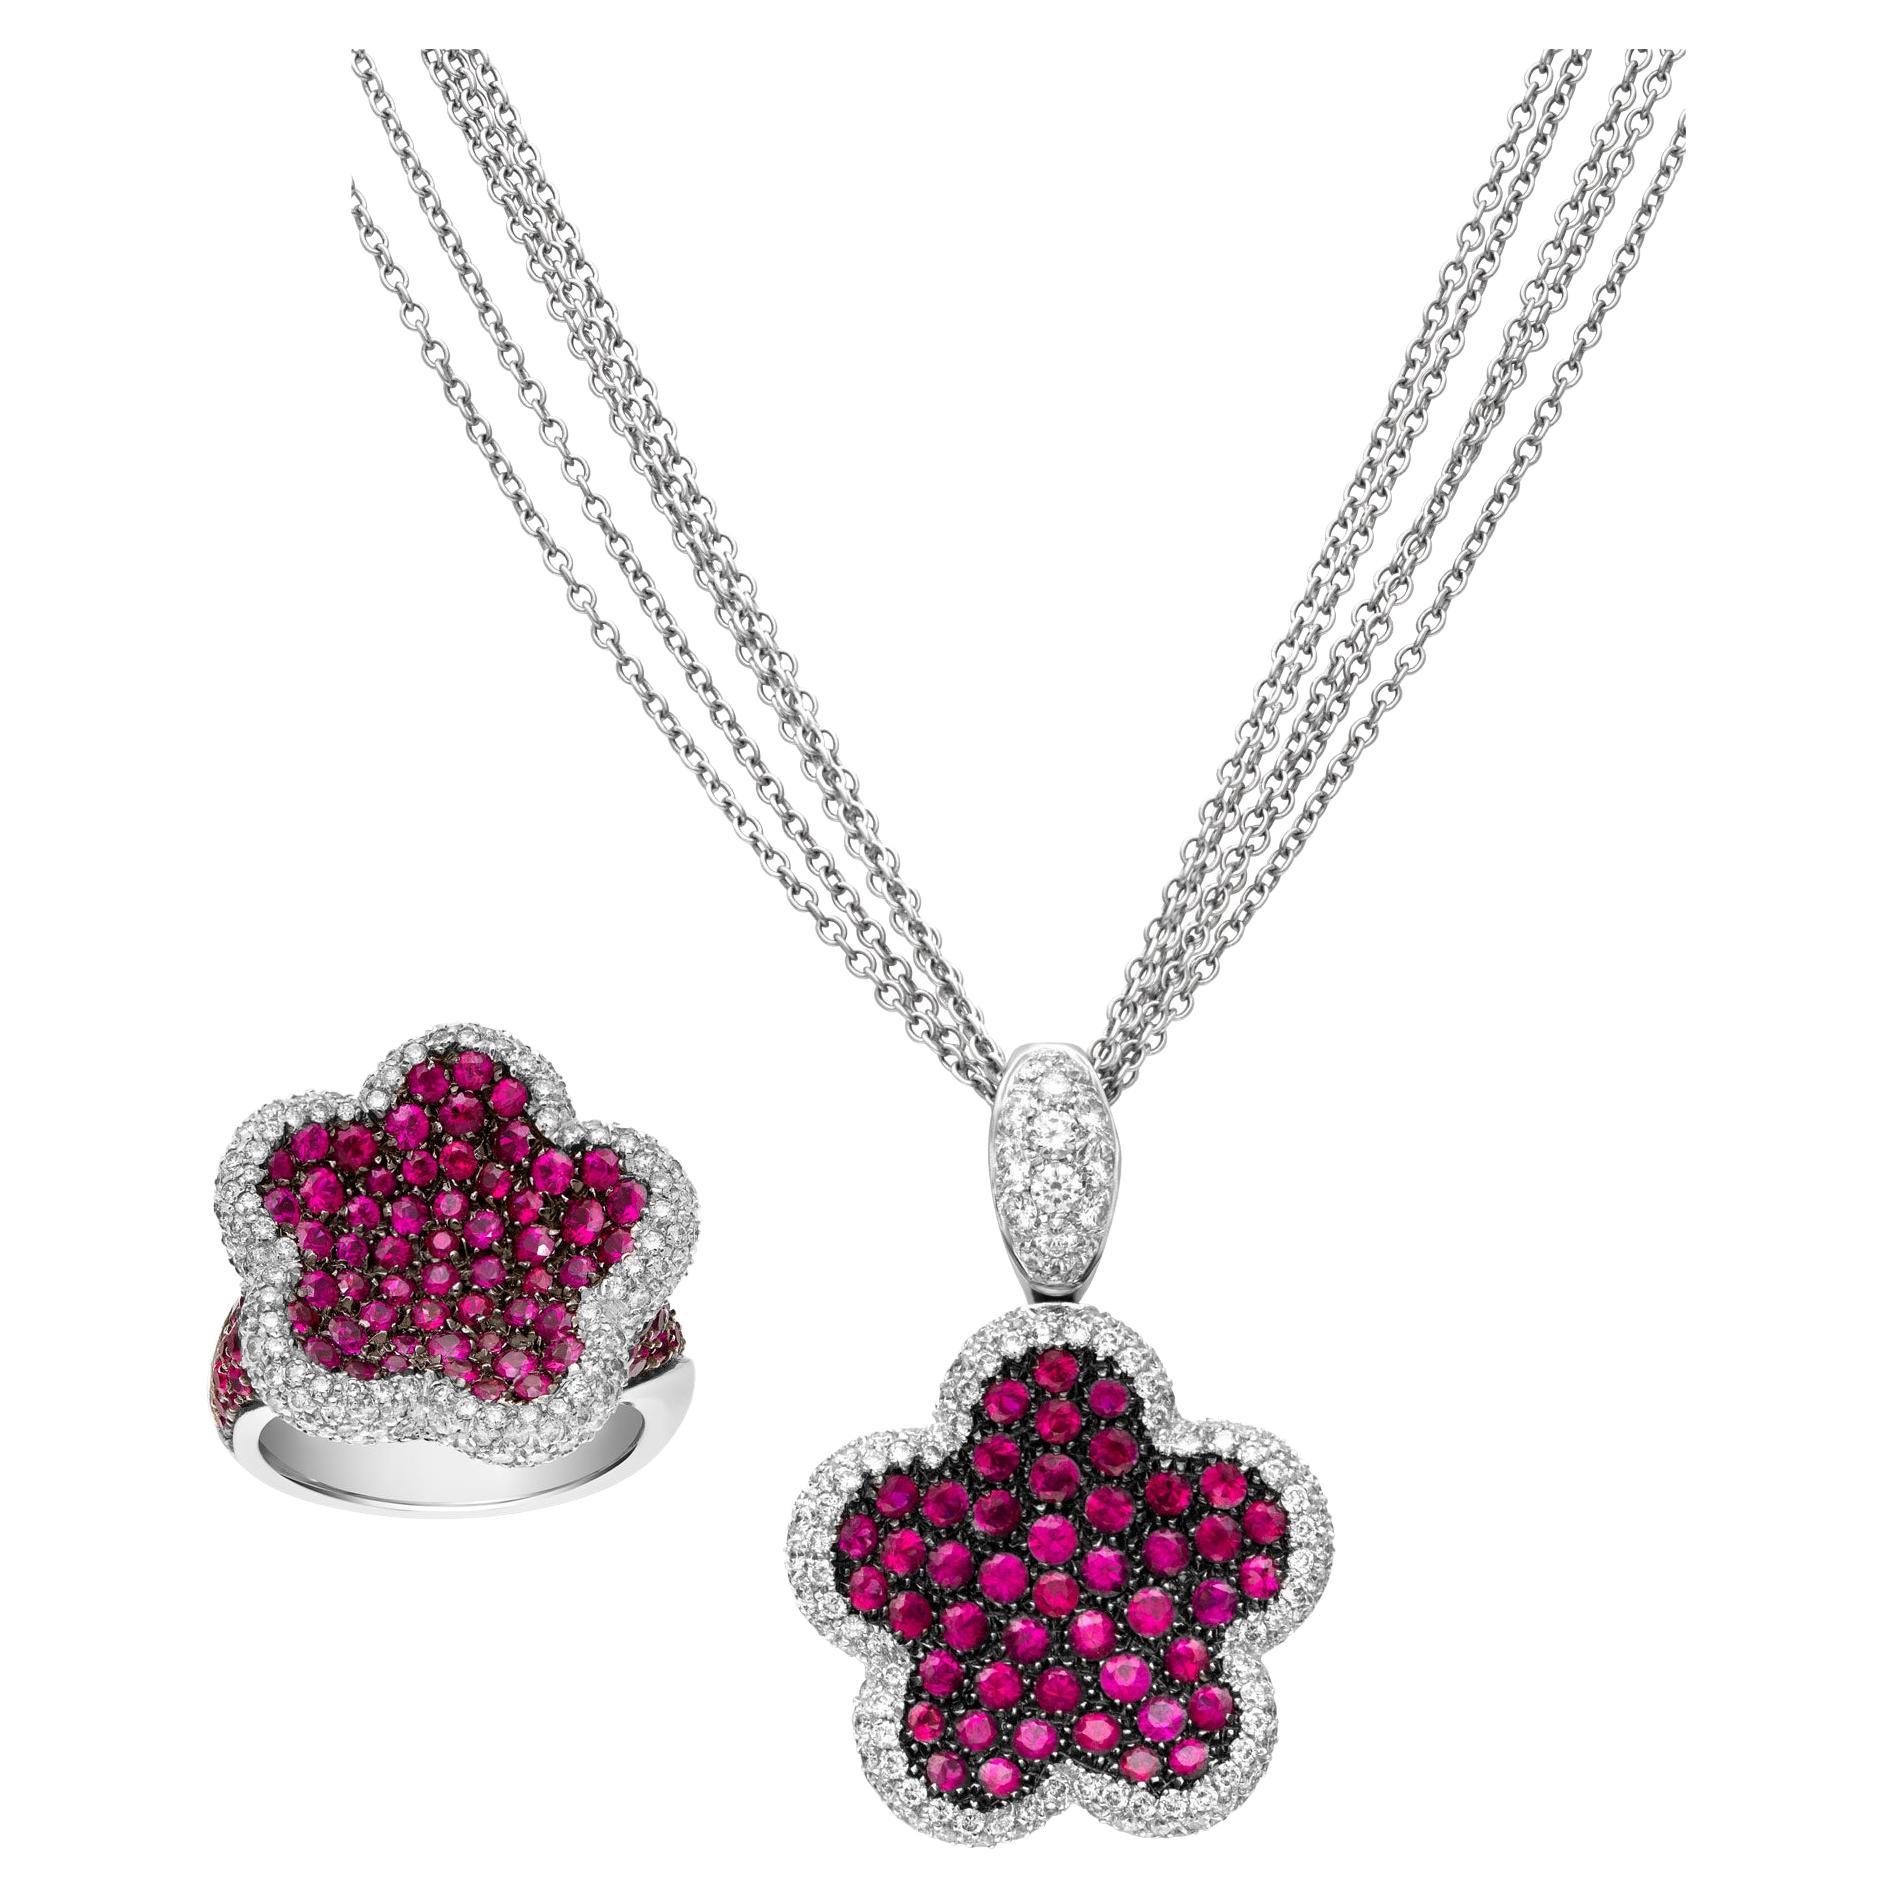 Pendentif, collier et bague 2 pièces en or blanc 18 carats avec saphir rose et diamants